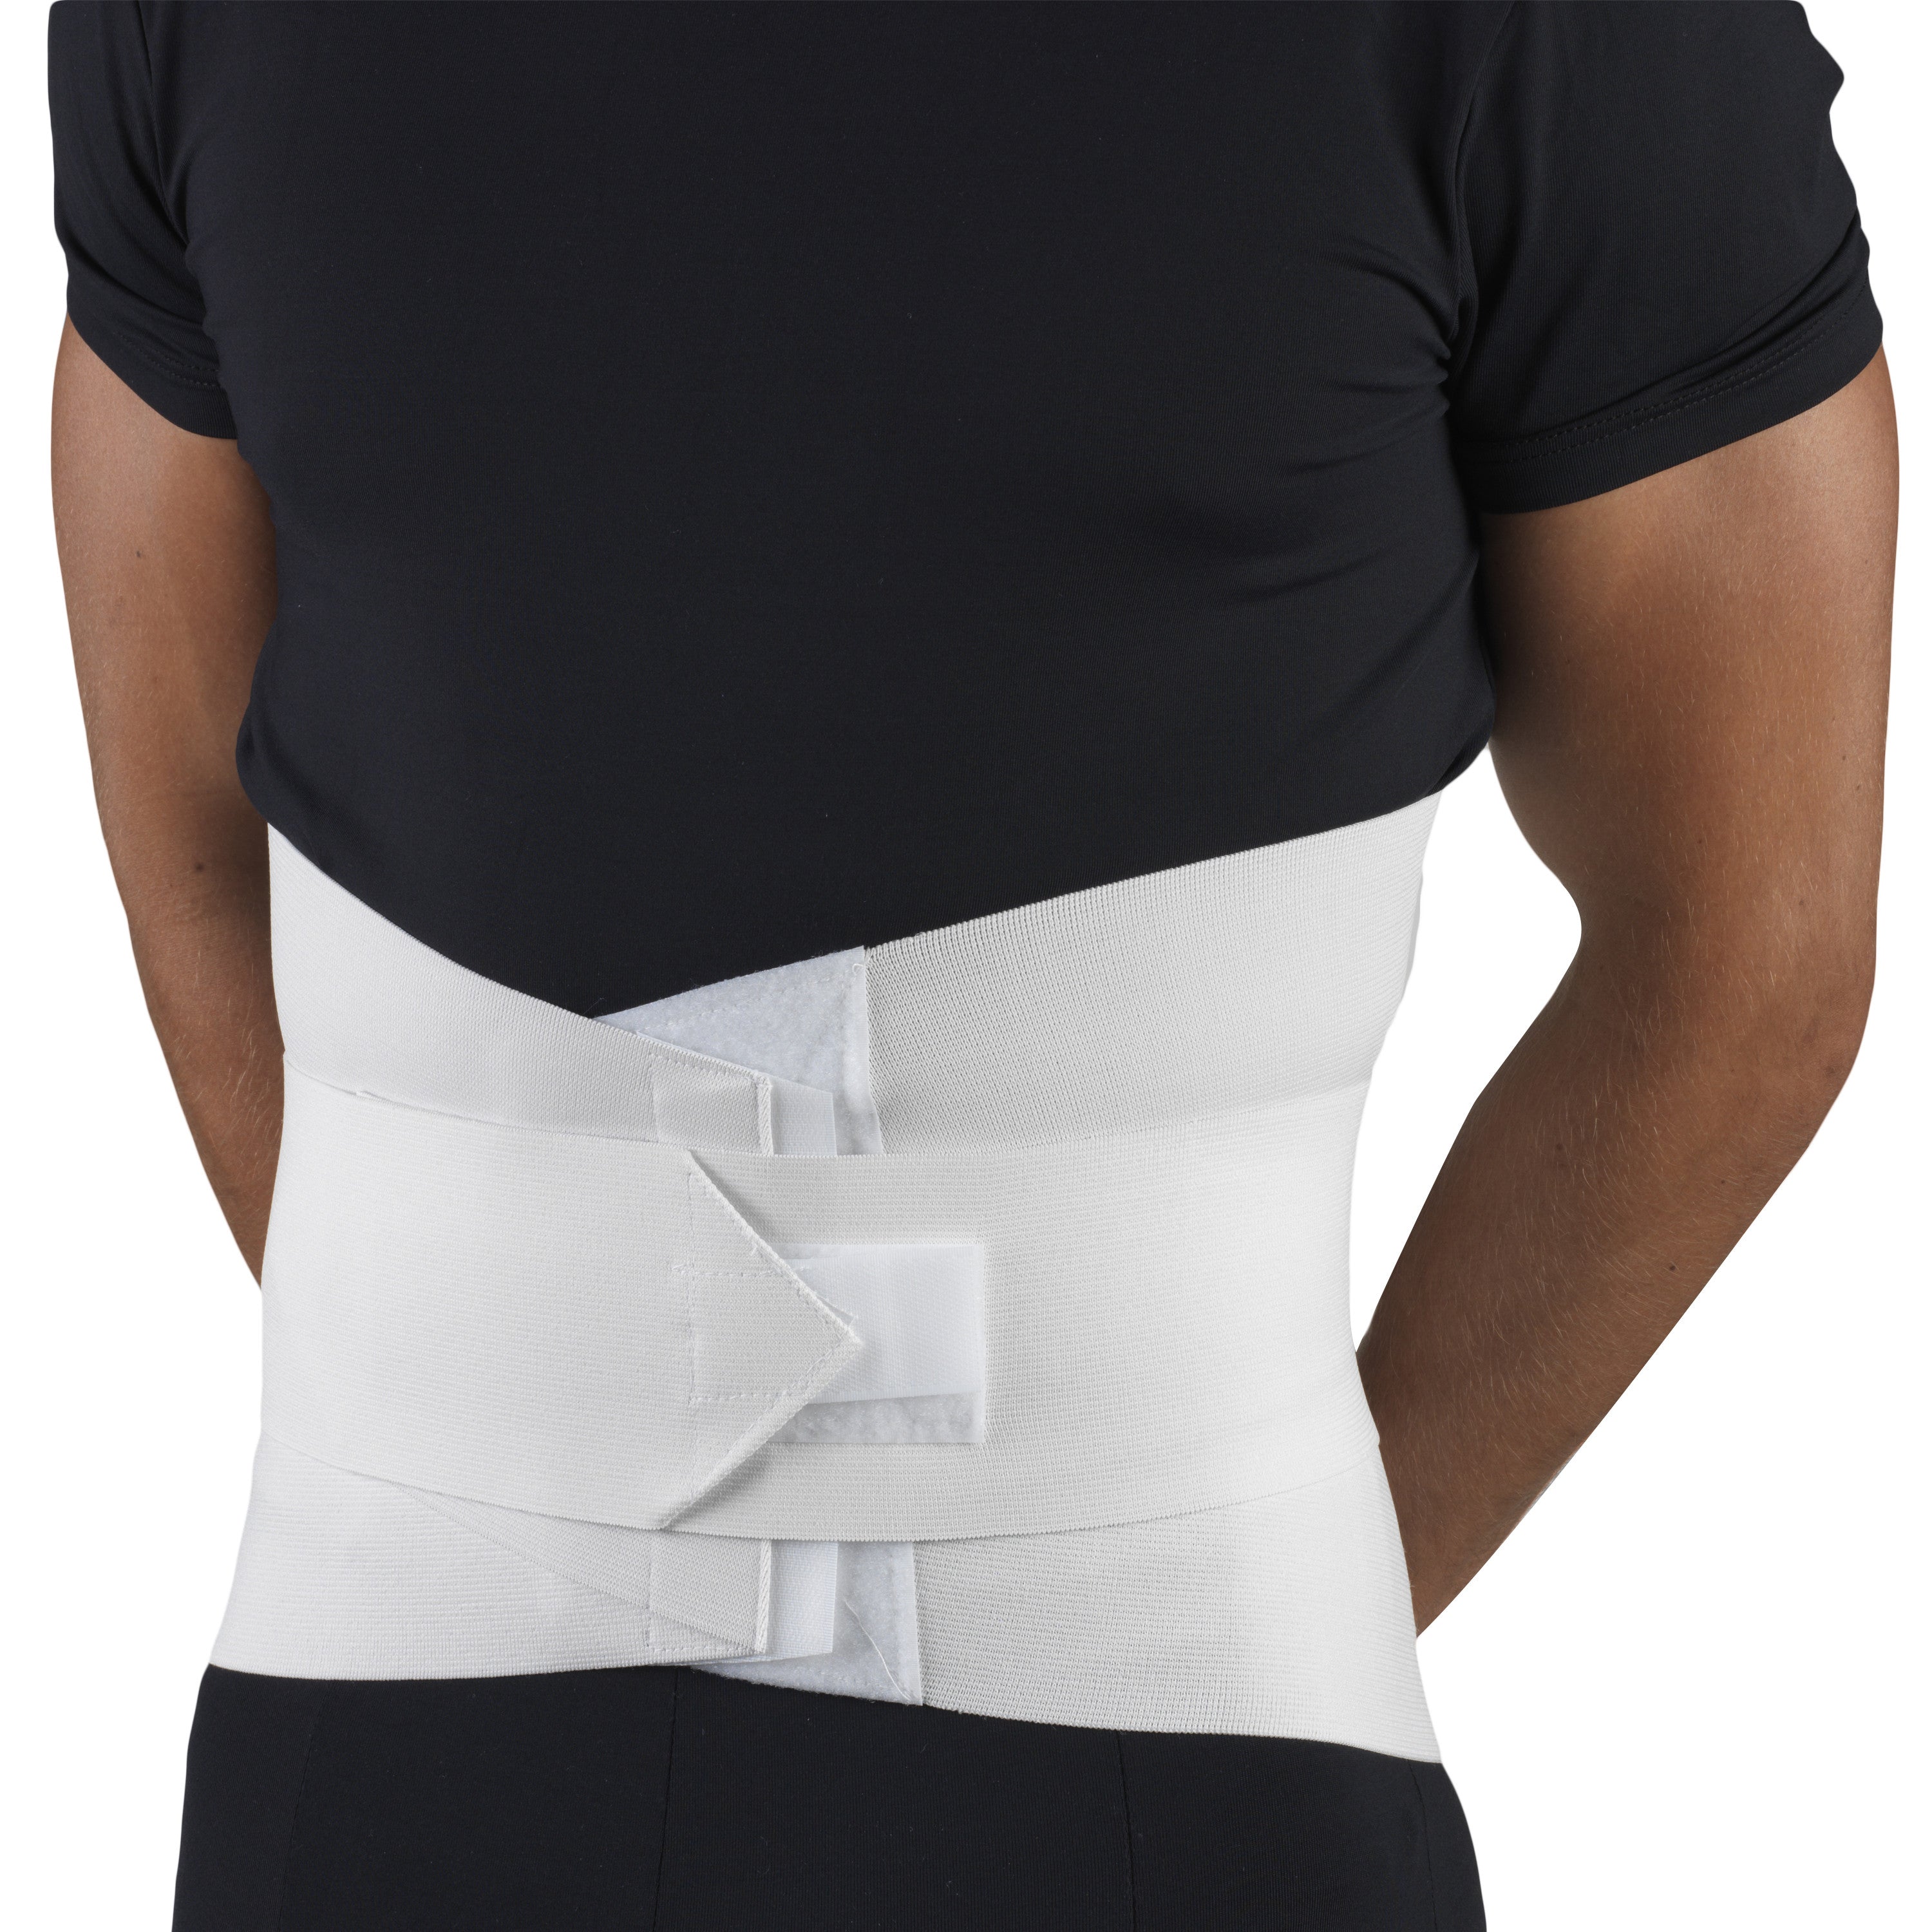 Abdominal Belt Waist Support Compression Lumbar Brace for Men